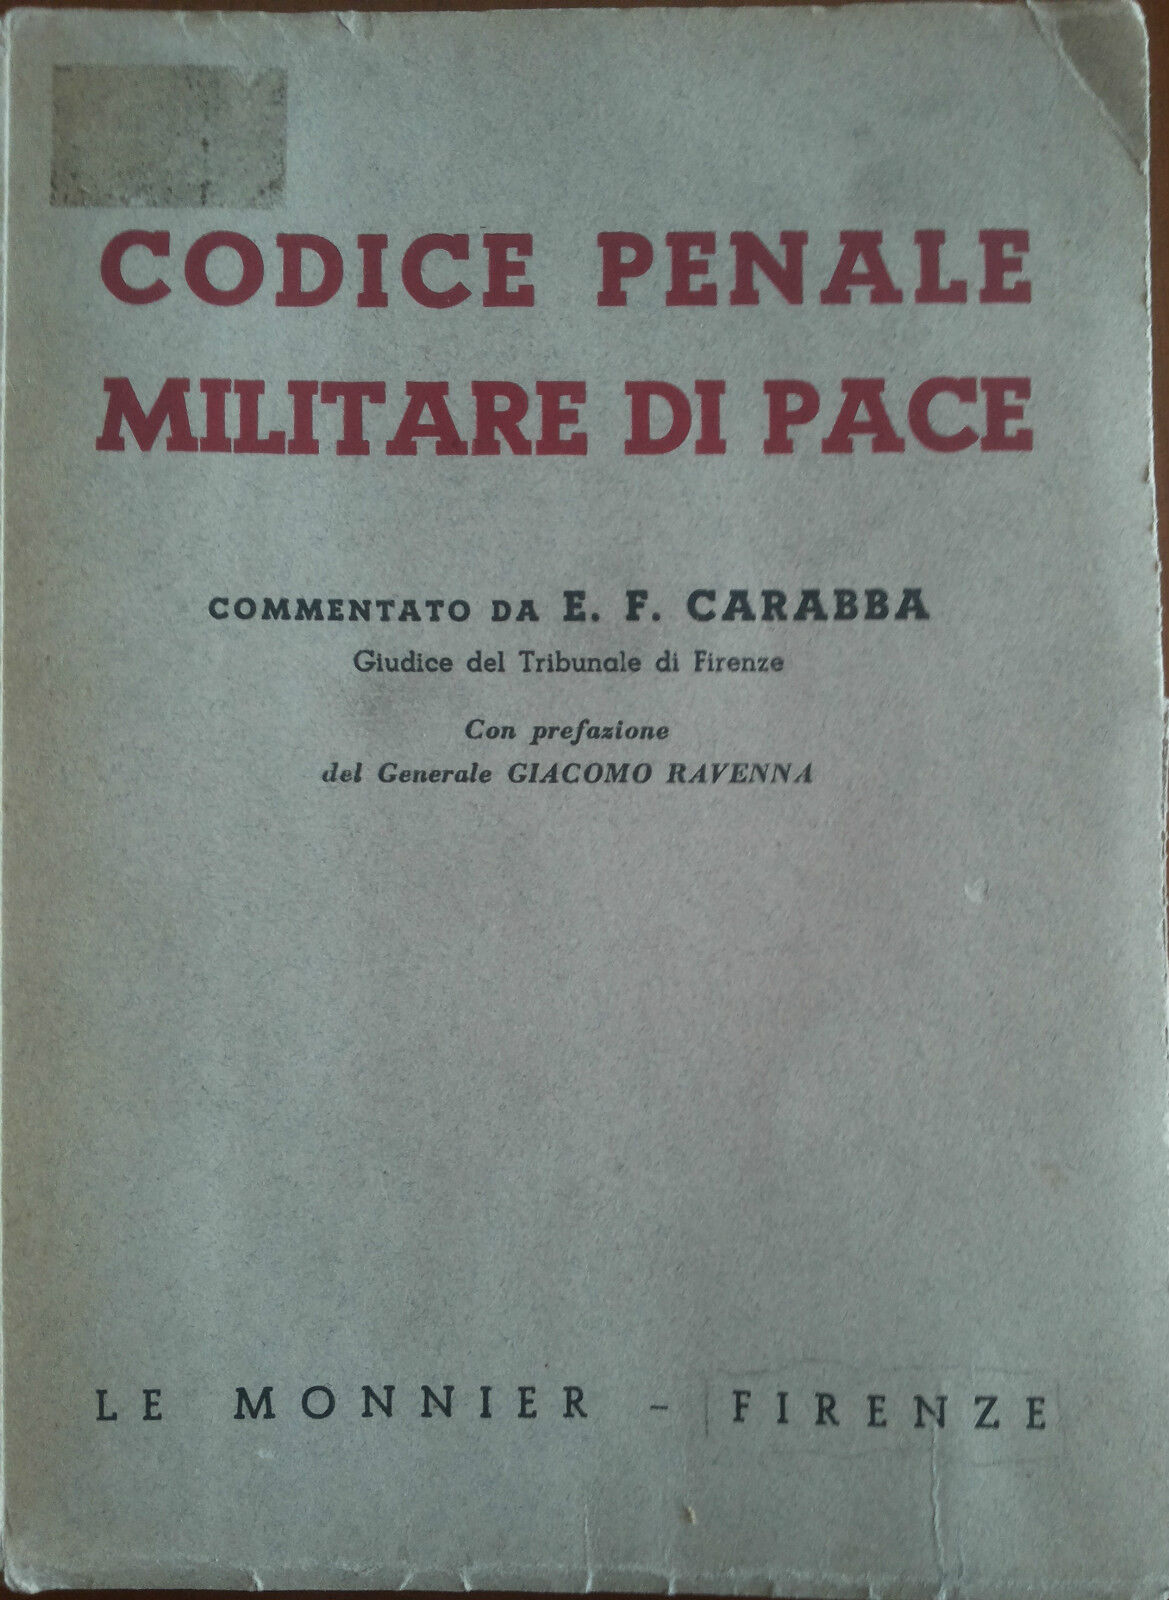 Codice penale militare di pace - Carabba, Le Monnier,1951 - A